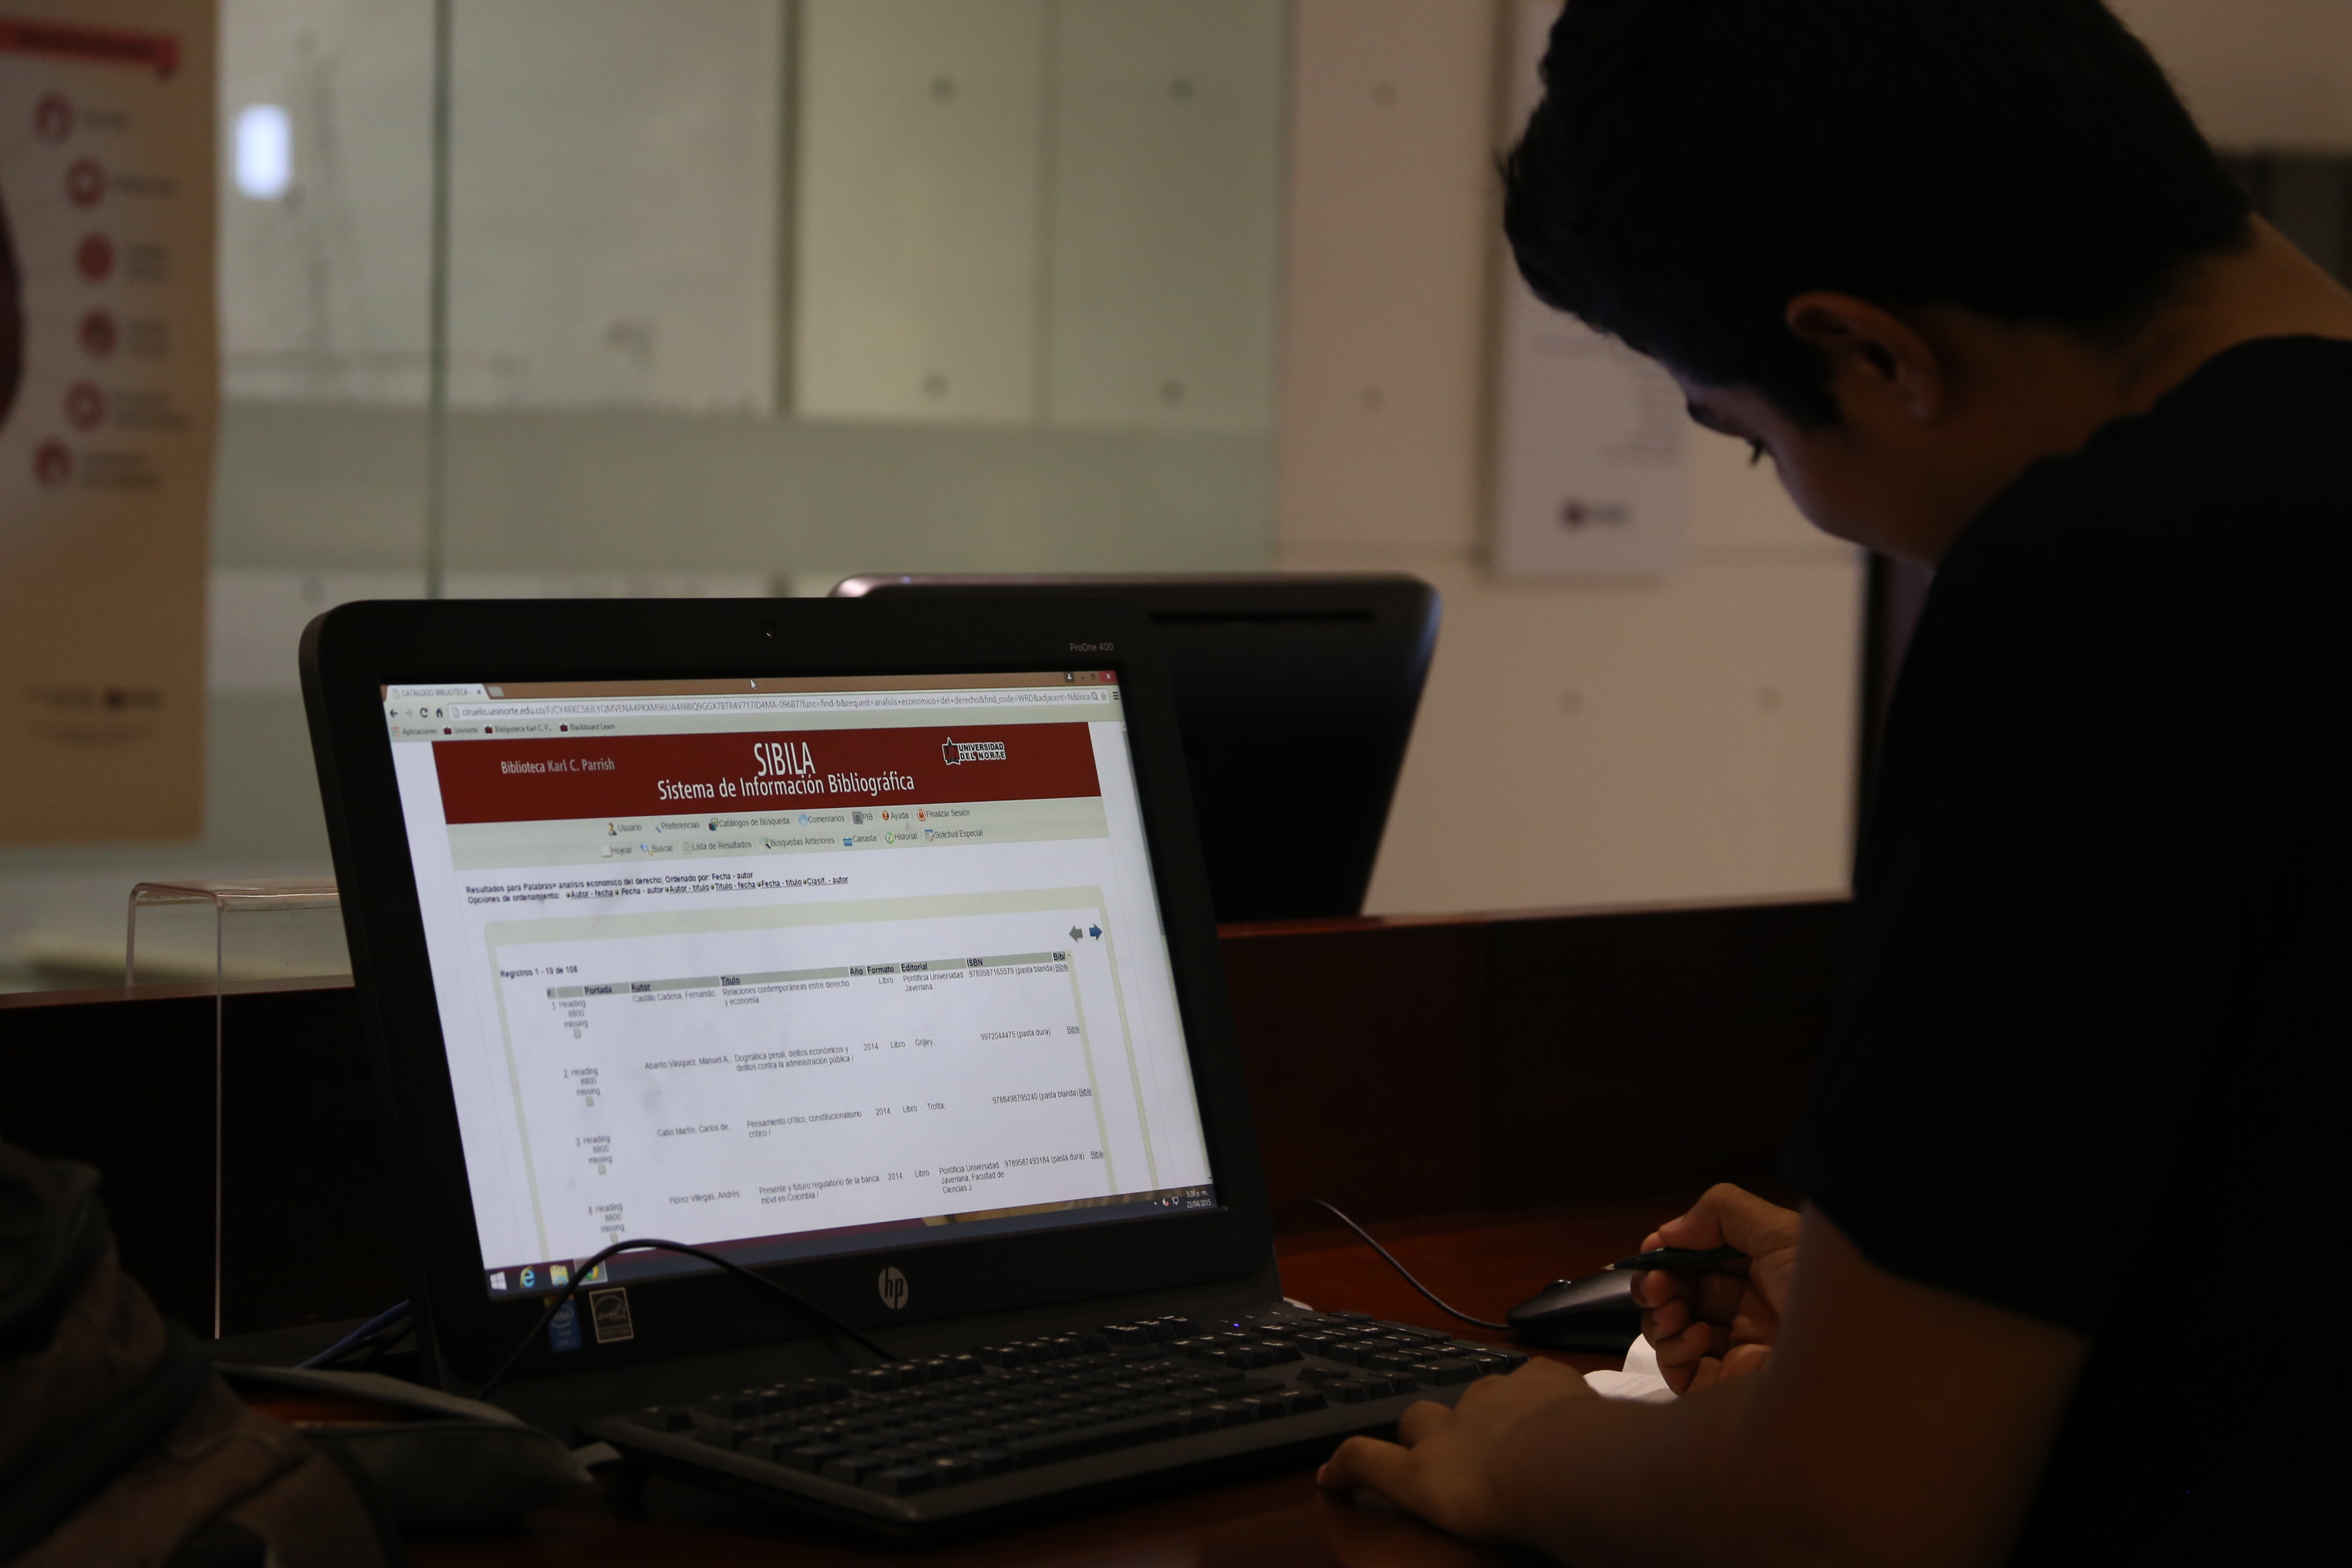 esta es una imagen de una persona revisando la base de datos de la biblioteca en un computador portatil